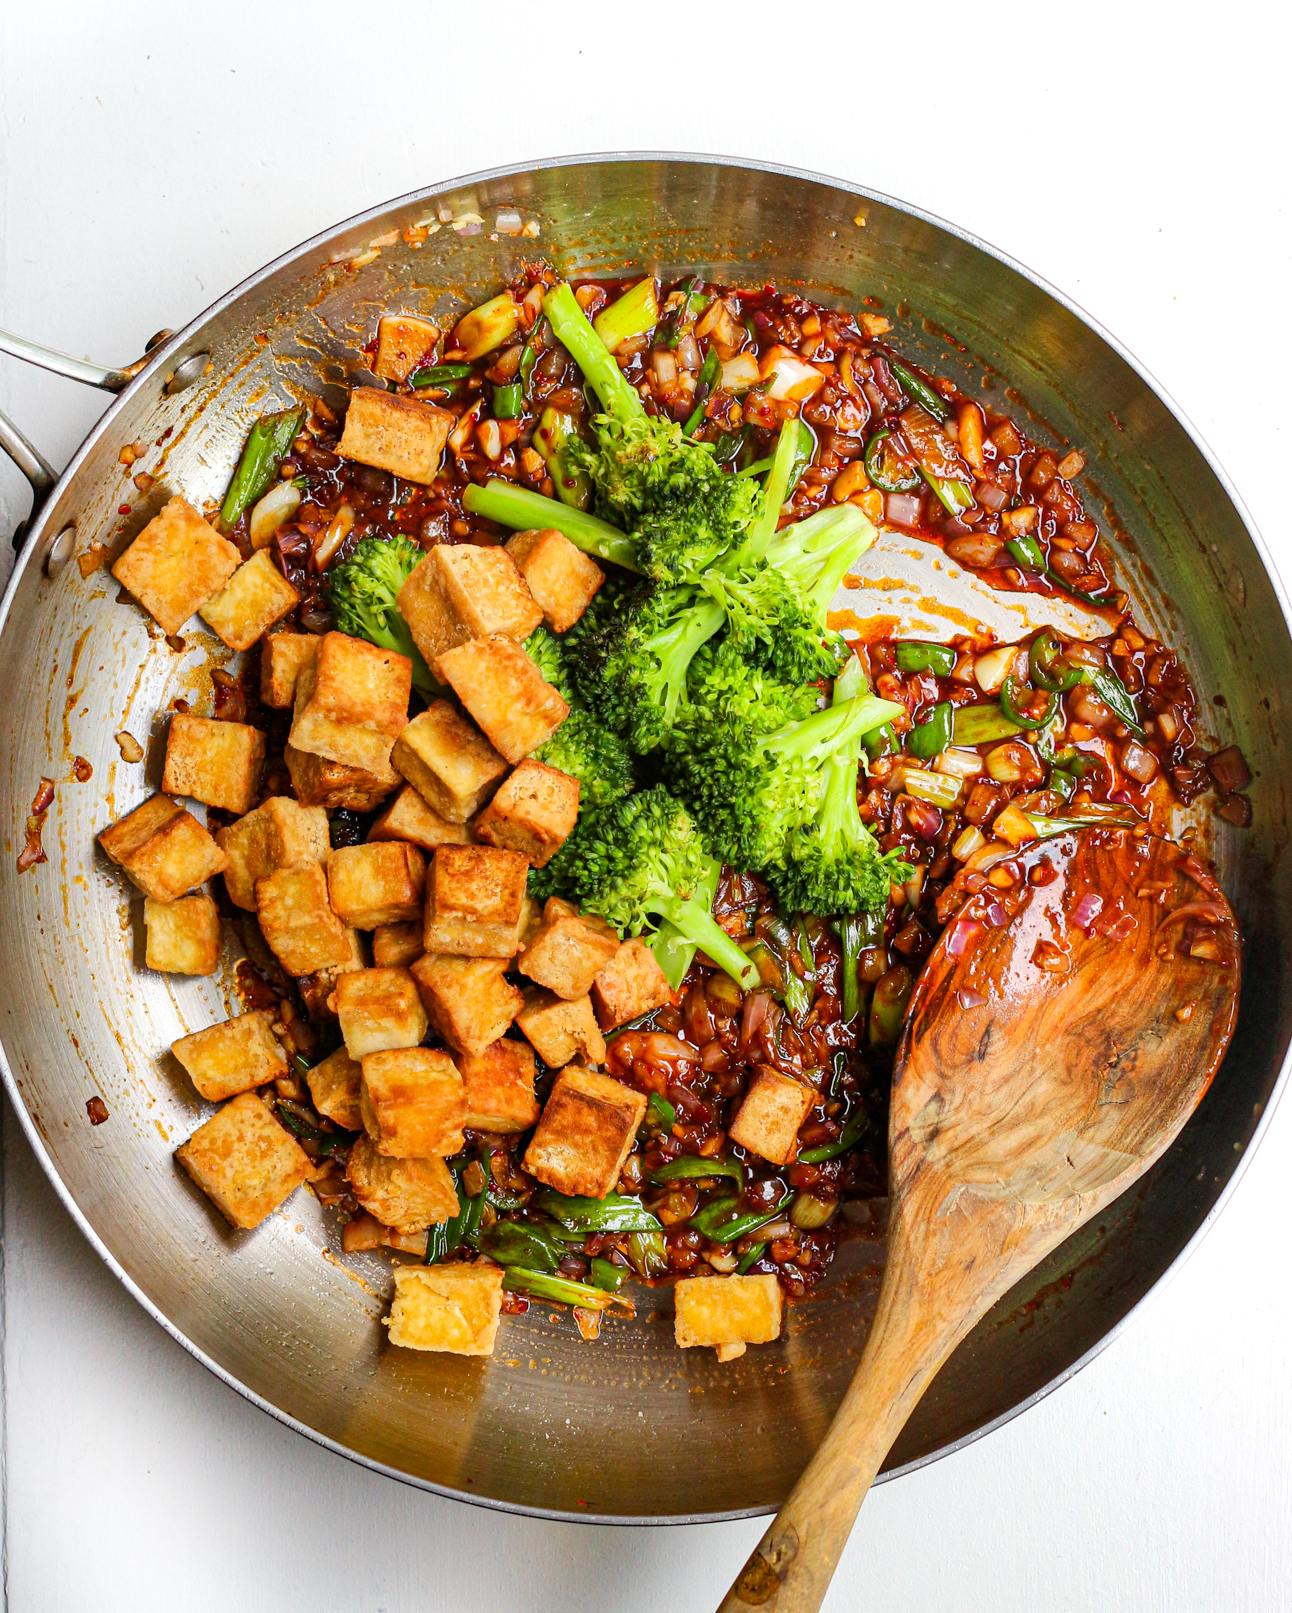 How to Make Crispy Tofu Stir Fry